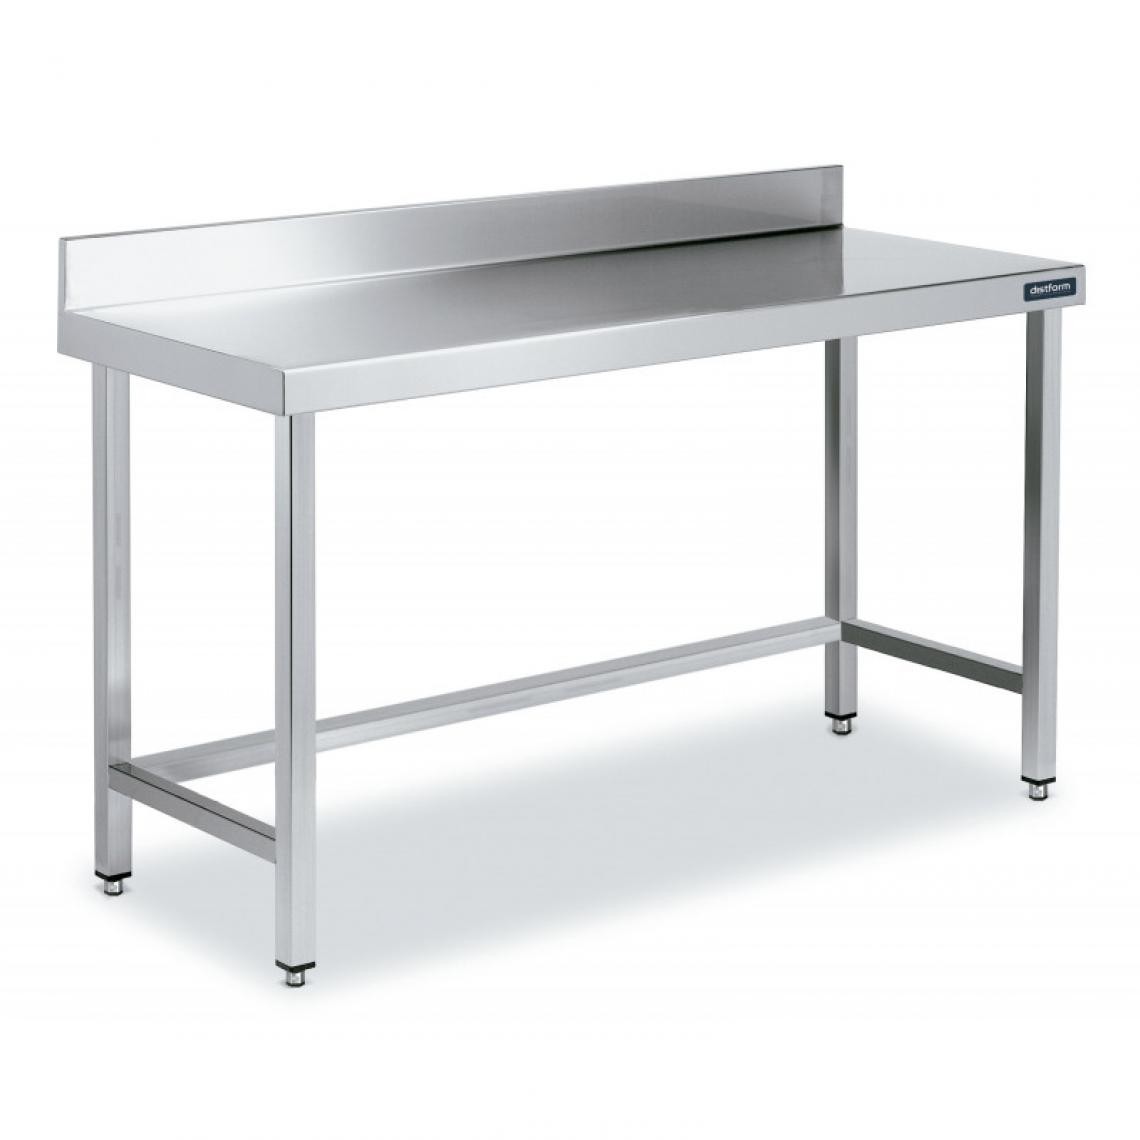 DISTFORM - Table Inox de Travail avec Dosseret Gamme 800 - Distform - Acier inoxydable1400x800 - Tables à manger